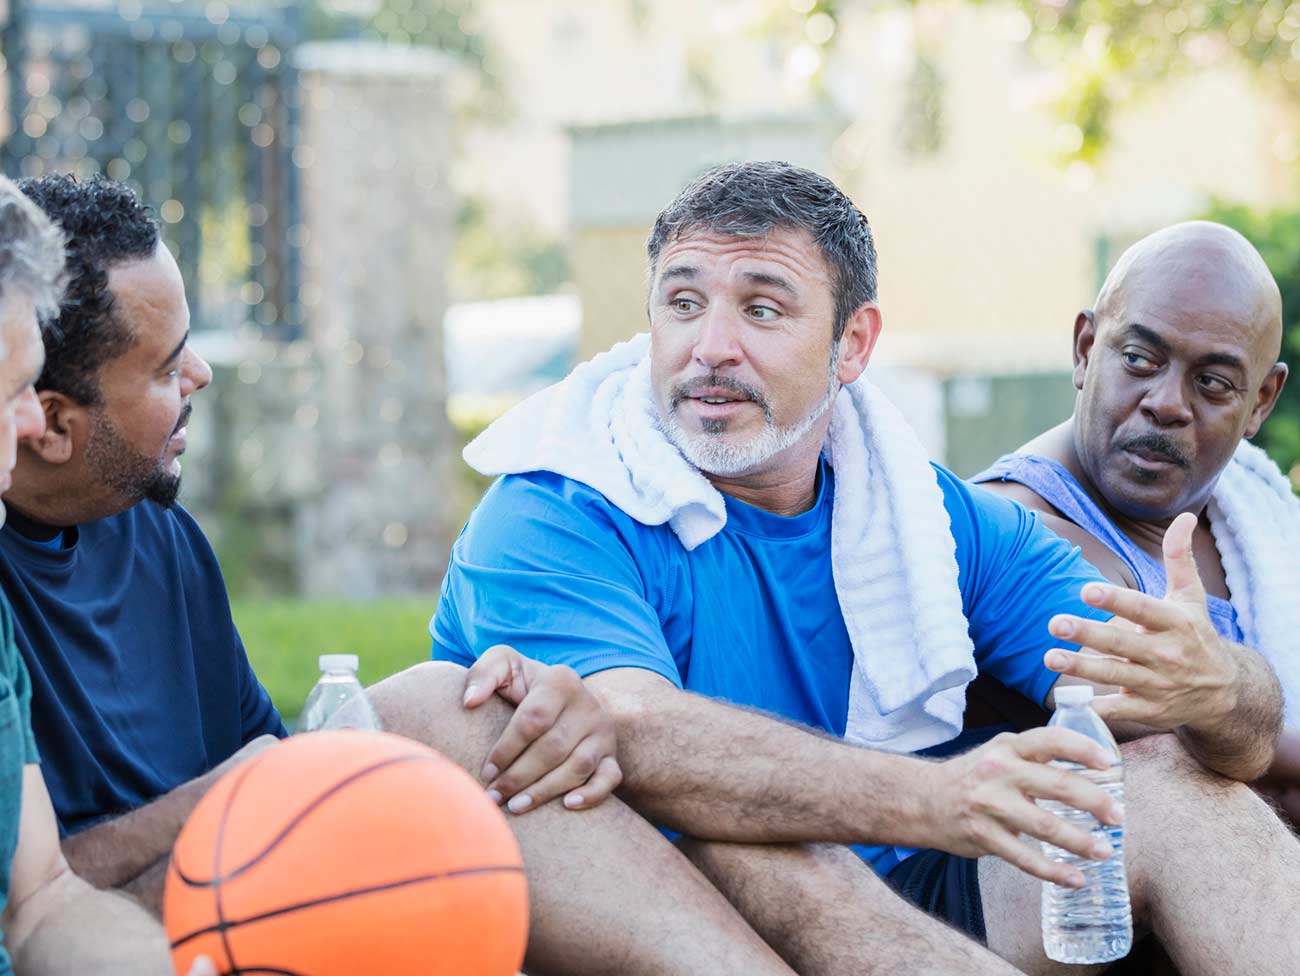 四个男人在室外篮球场坐着聊天